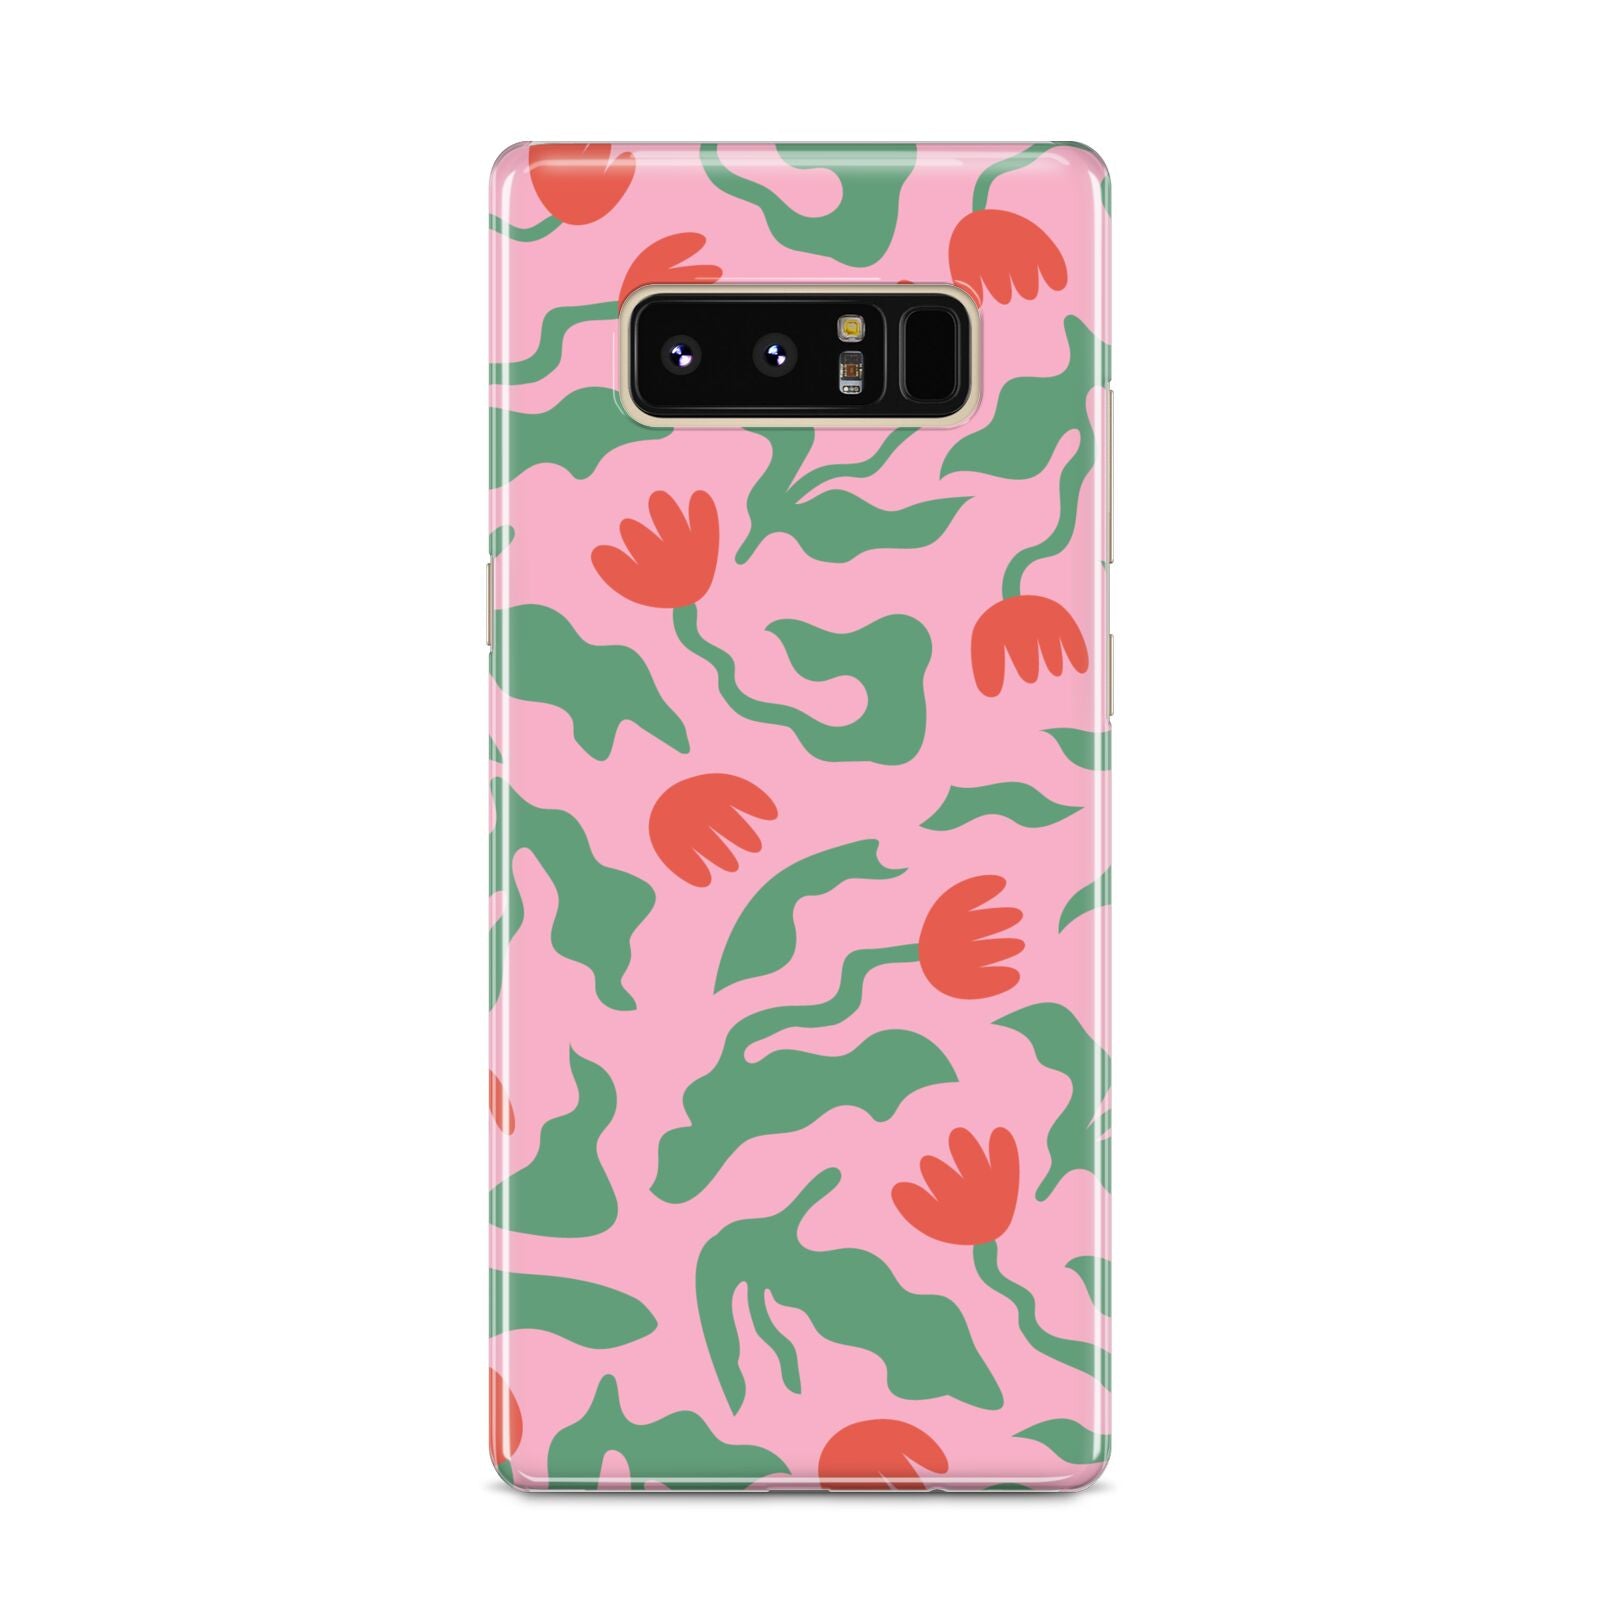 Simple Floral Samsung Galaxy S8 Case